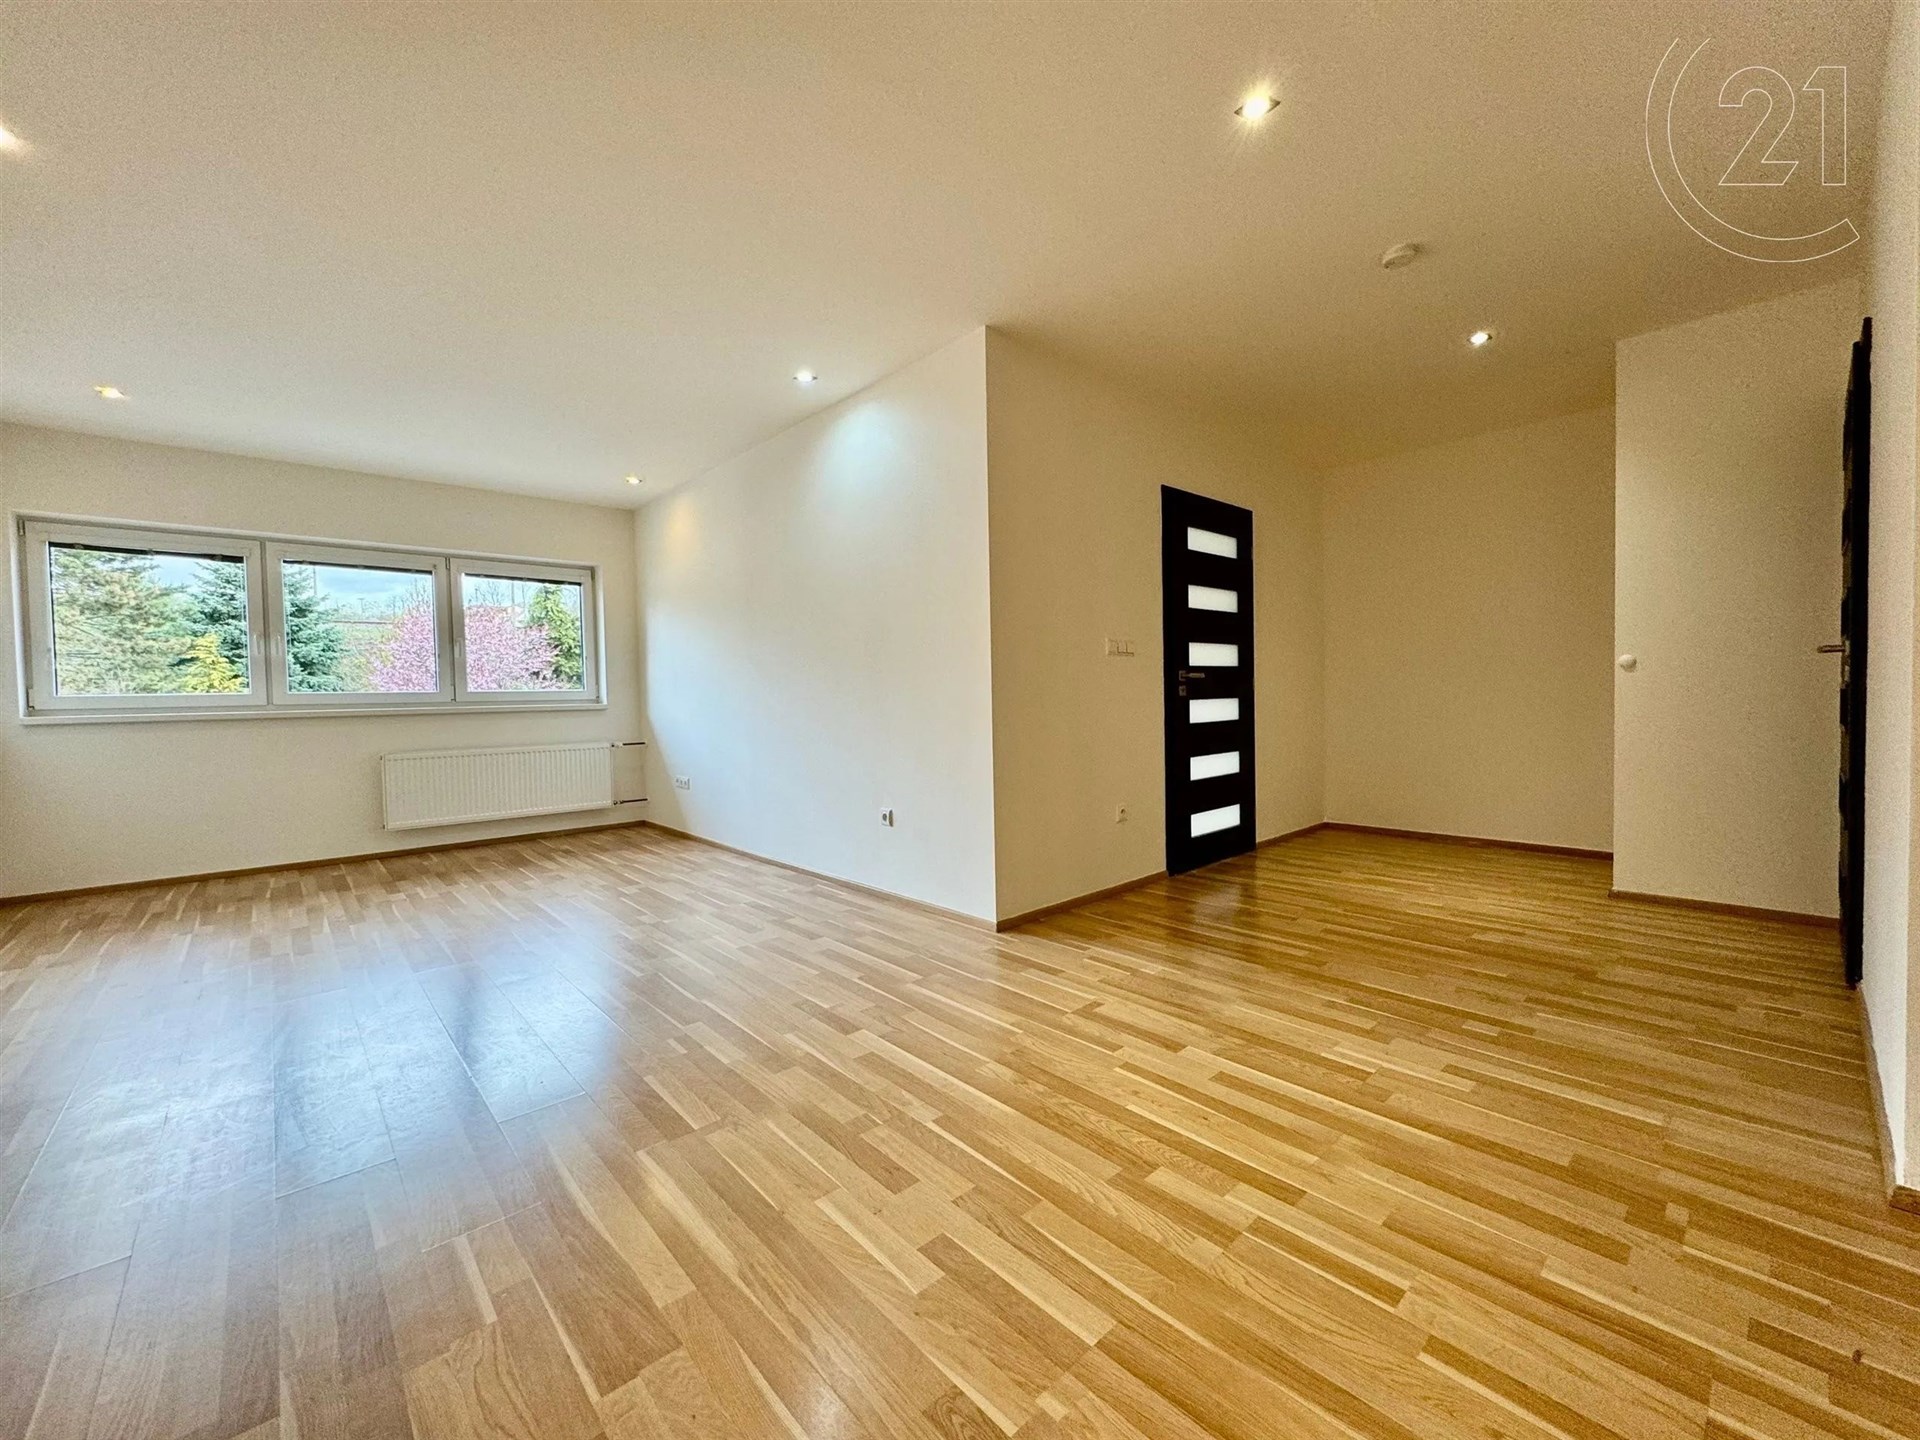 prázdná místnost s dřevěná podlaha, přirozené světlo, a radiátor